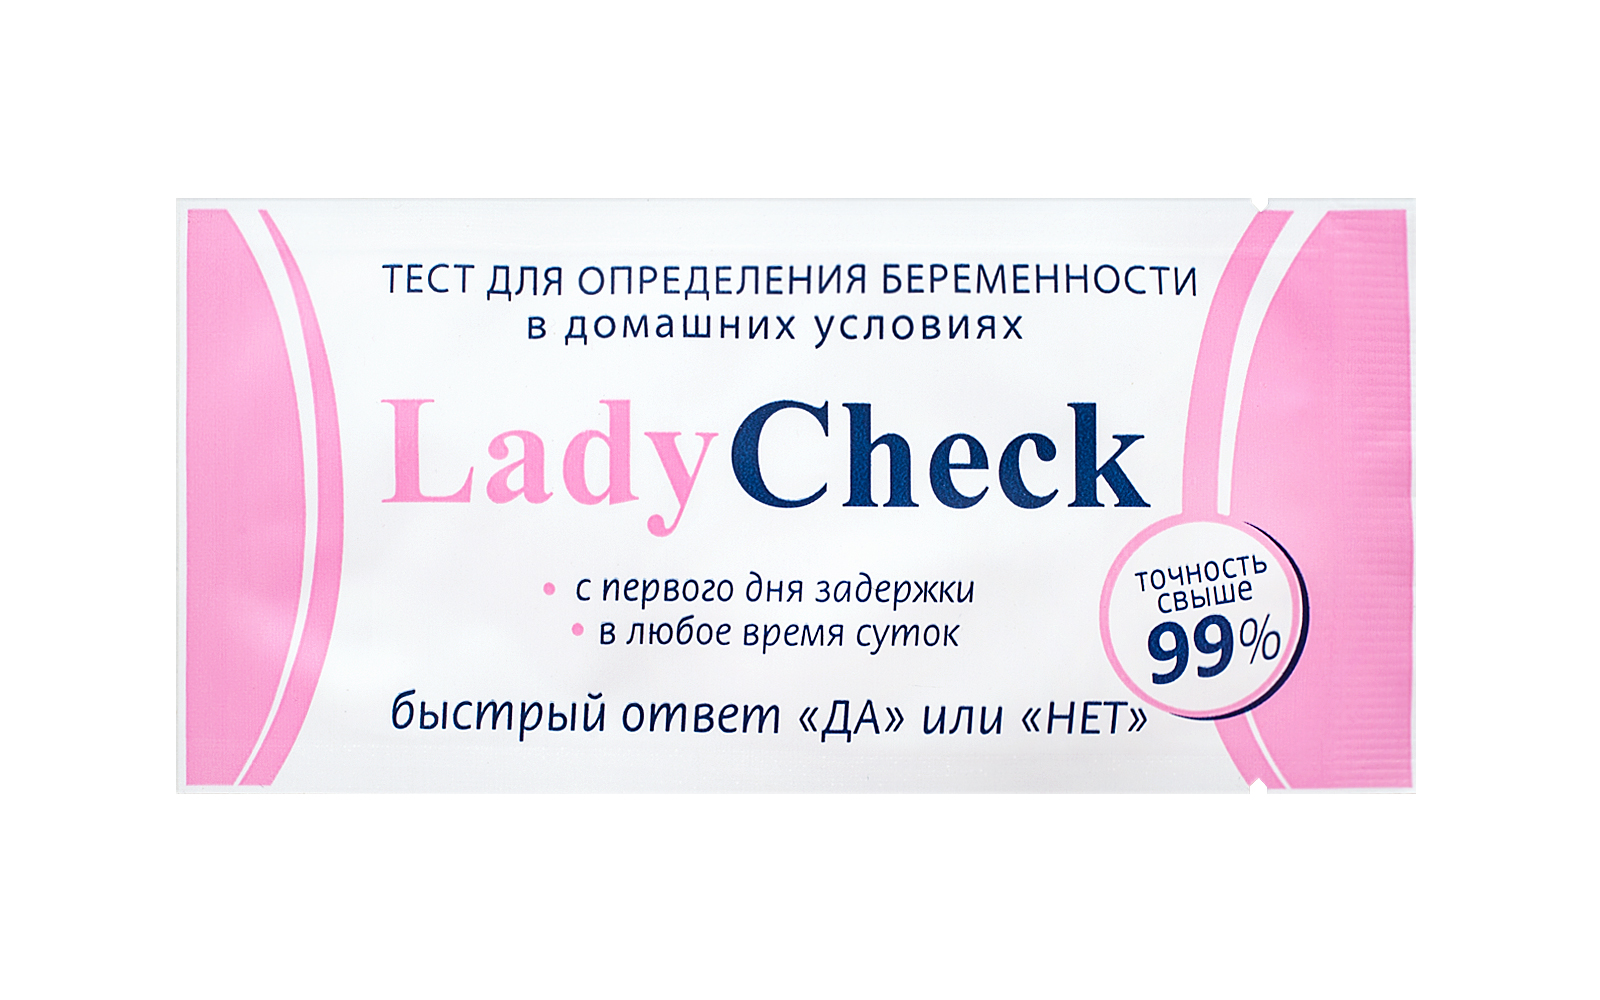 Тест Lady Check для определения беременности тест-полоска 1 шт.